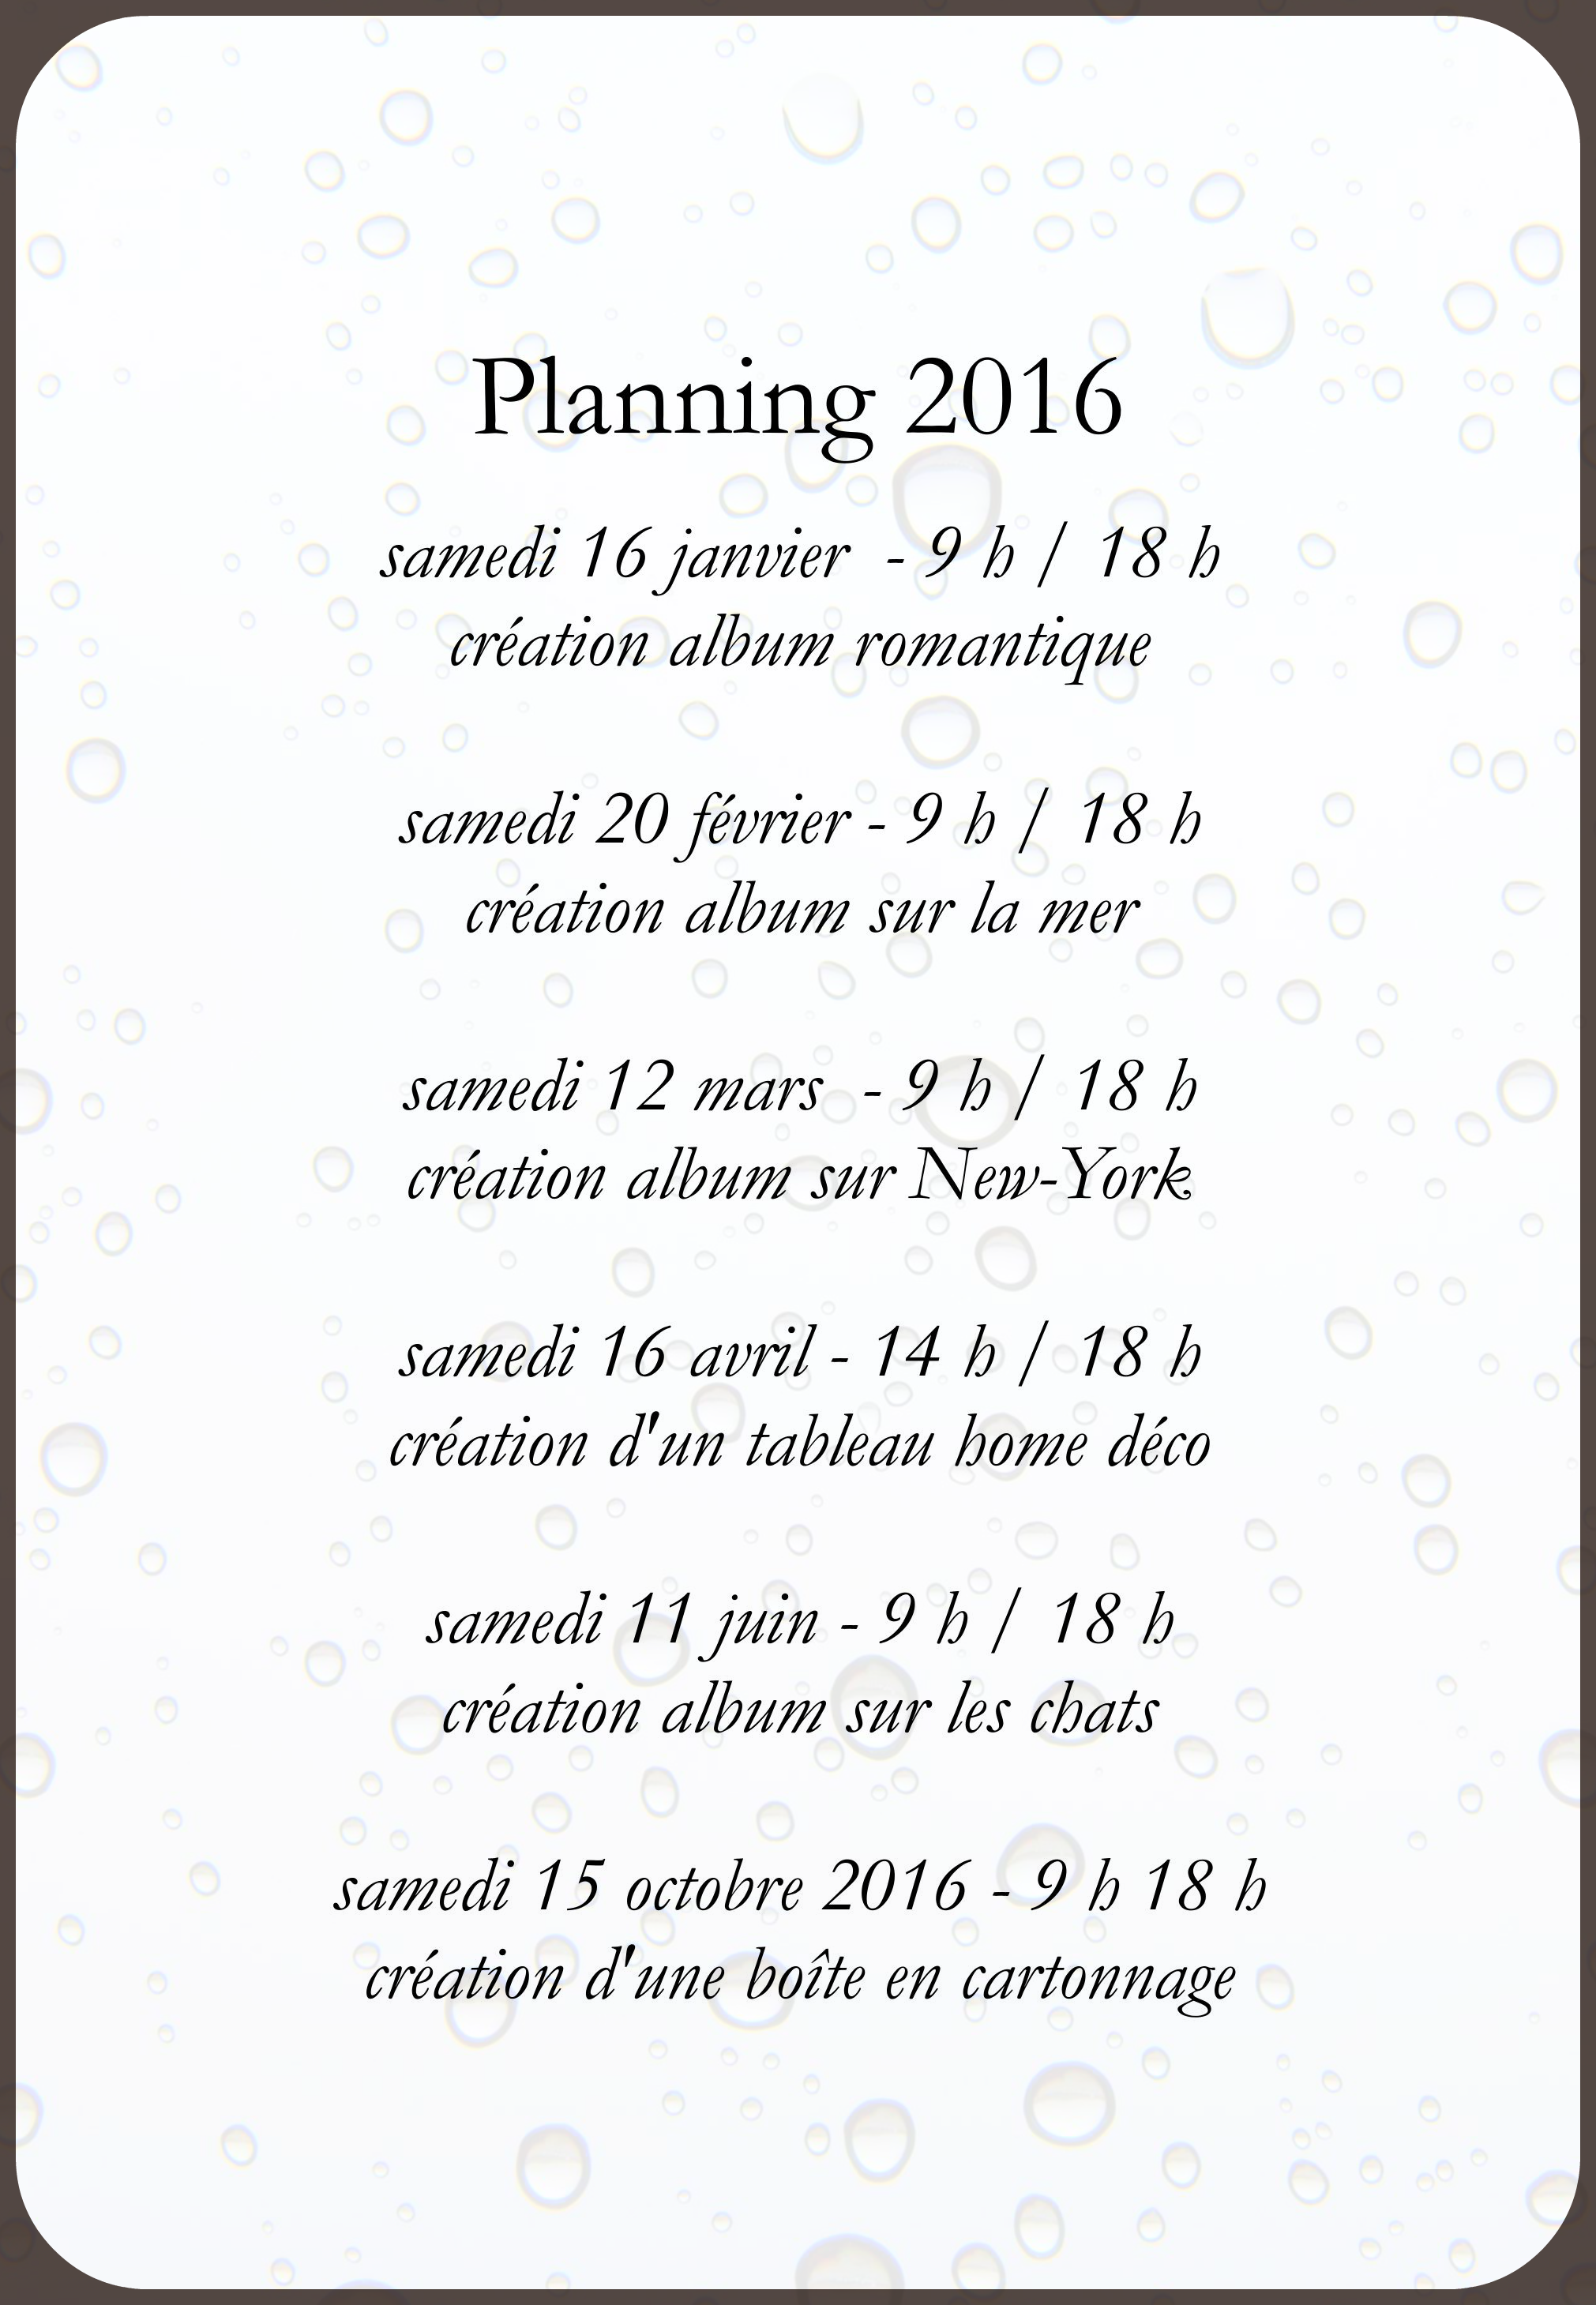 planning des stages 2016 chez Tamporelle